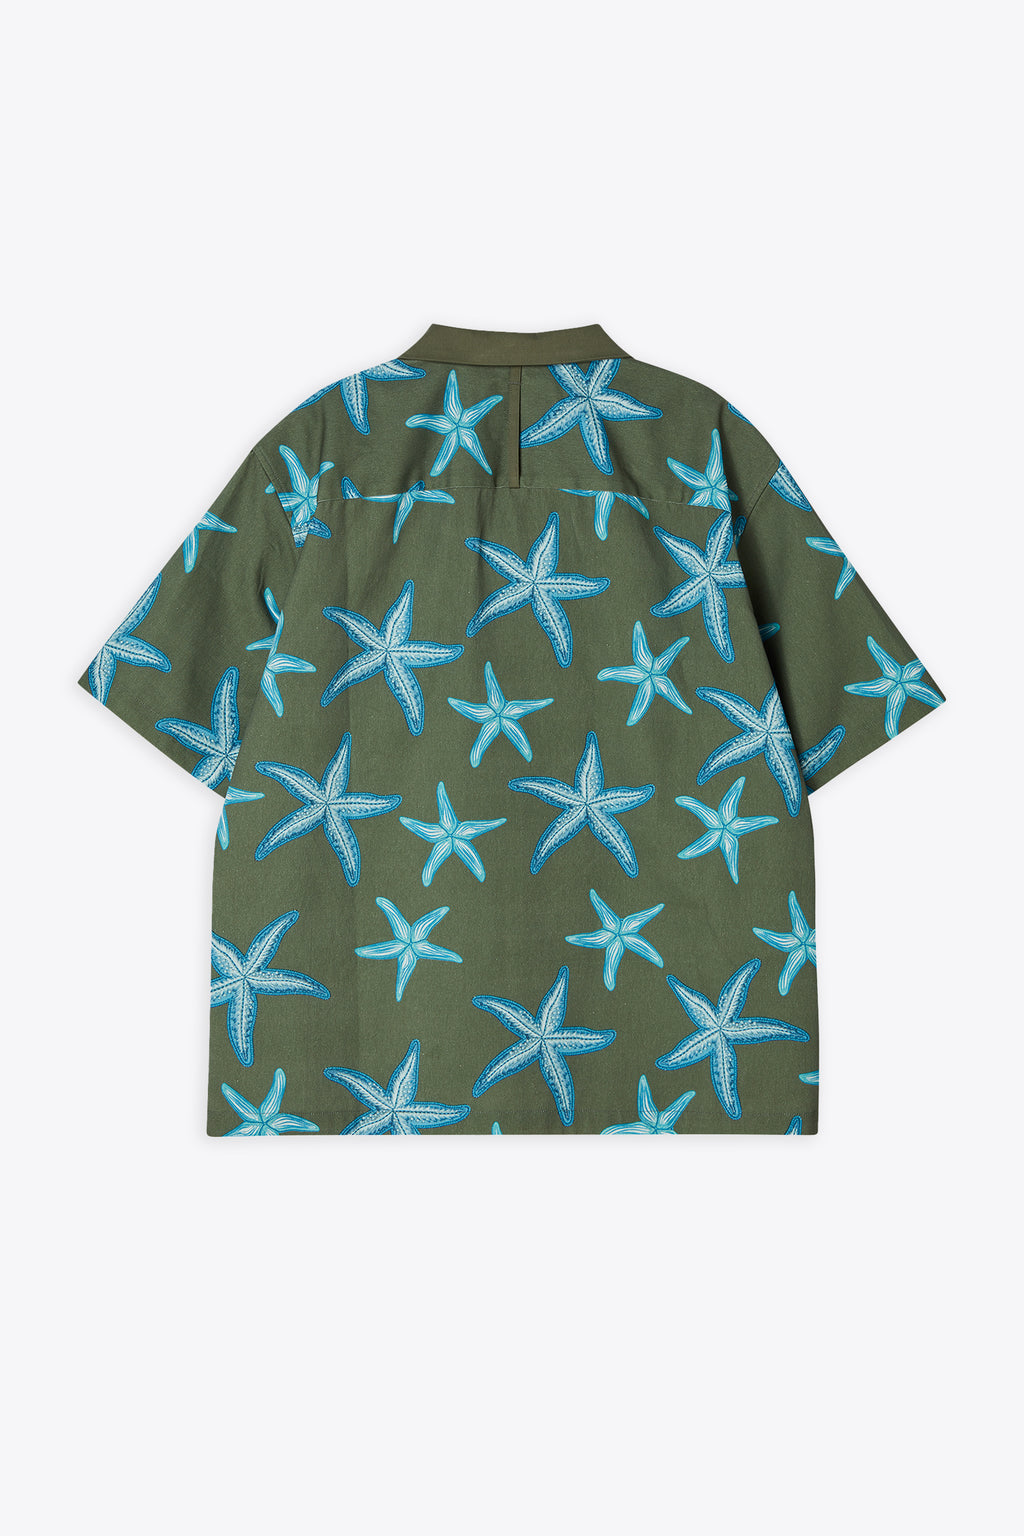 alt-image__Camicia-a-maniche-corte-in-cotone-verde-militare-con-stelle-marine---Starfish-Open-Collar-Half-Shirt